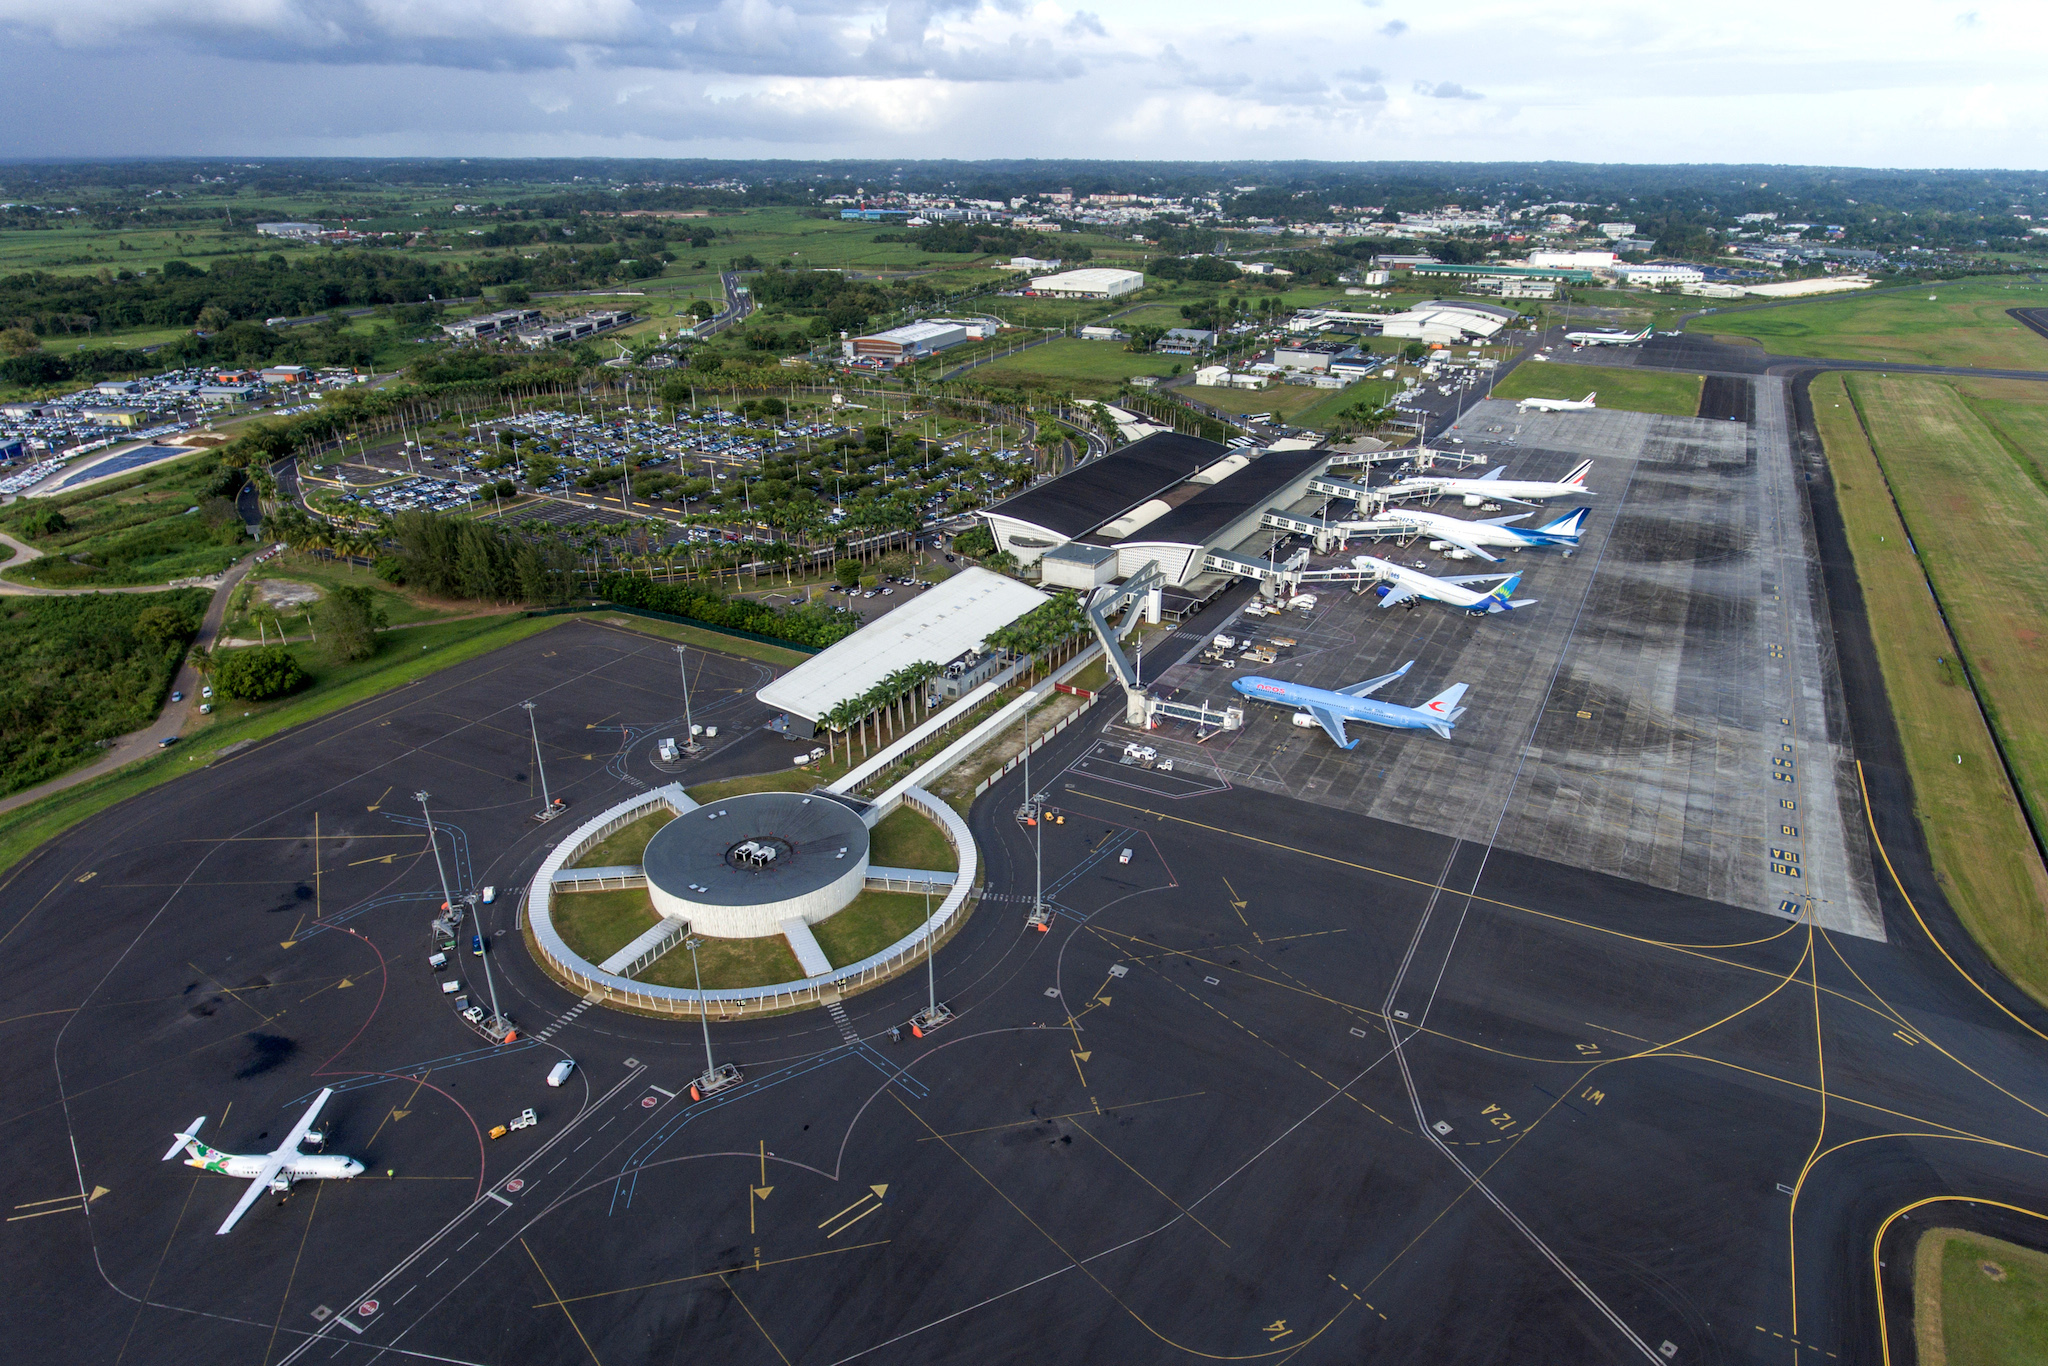     Aéroport de Guadeloupe : les bons chiffres se maintiennent 

